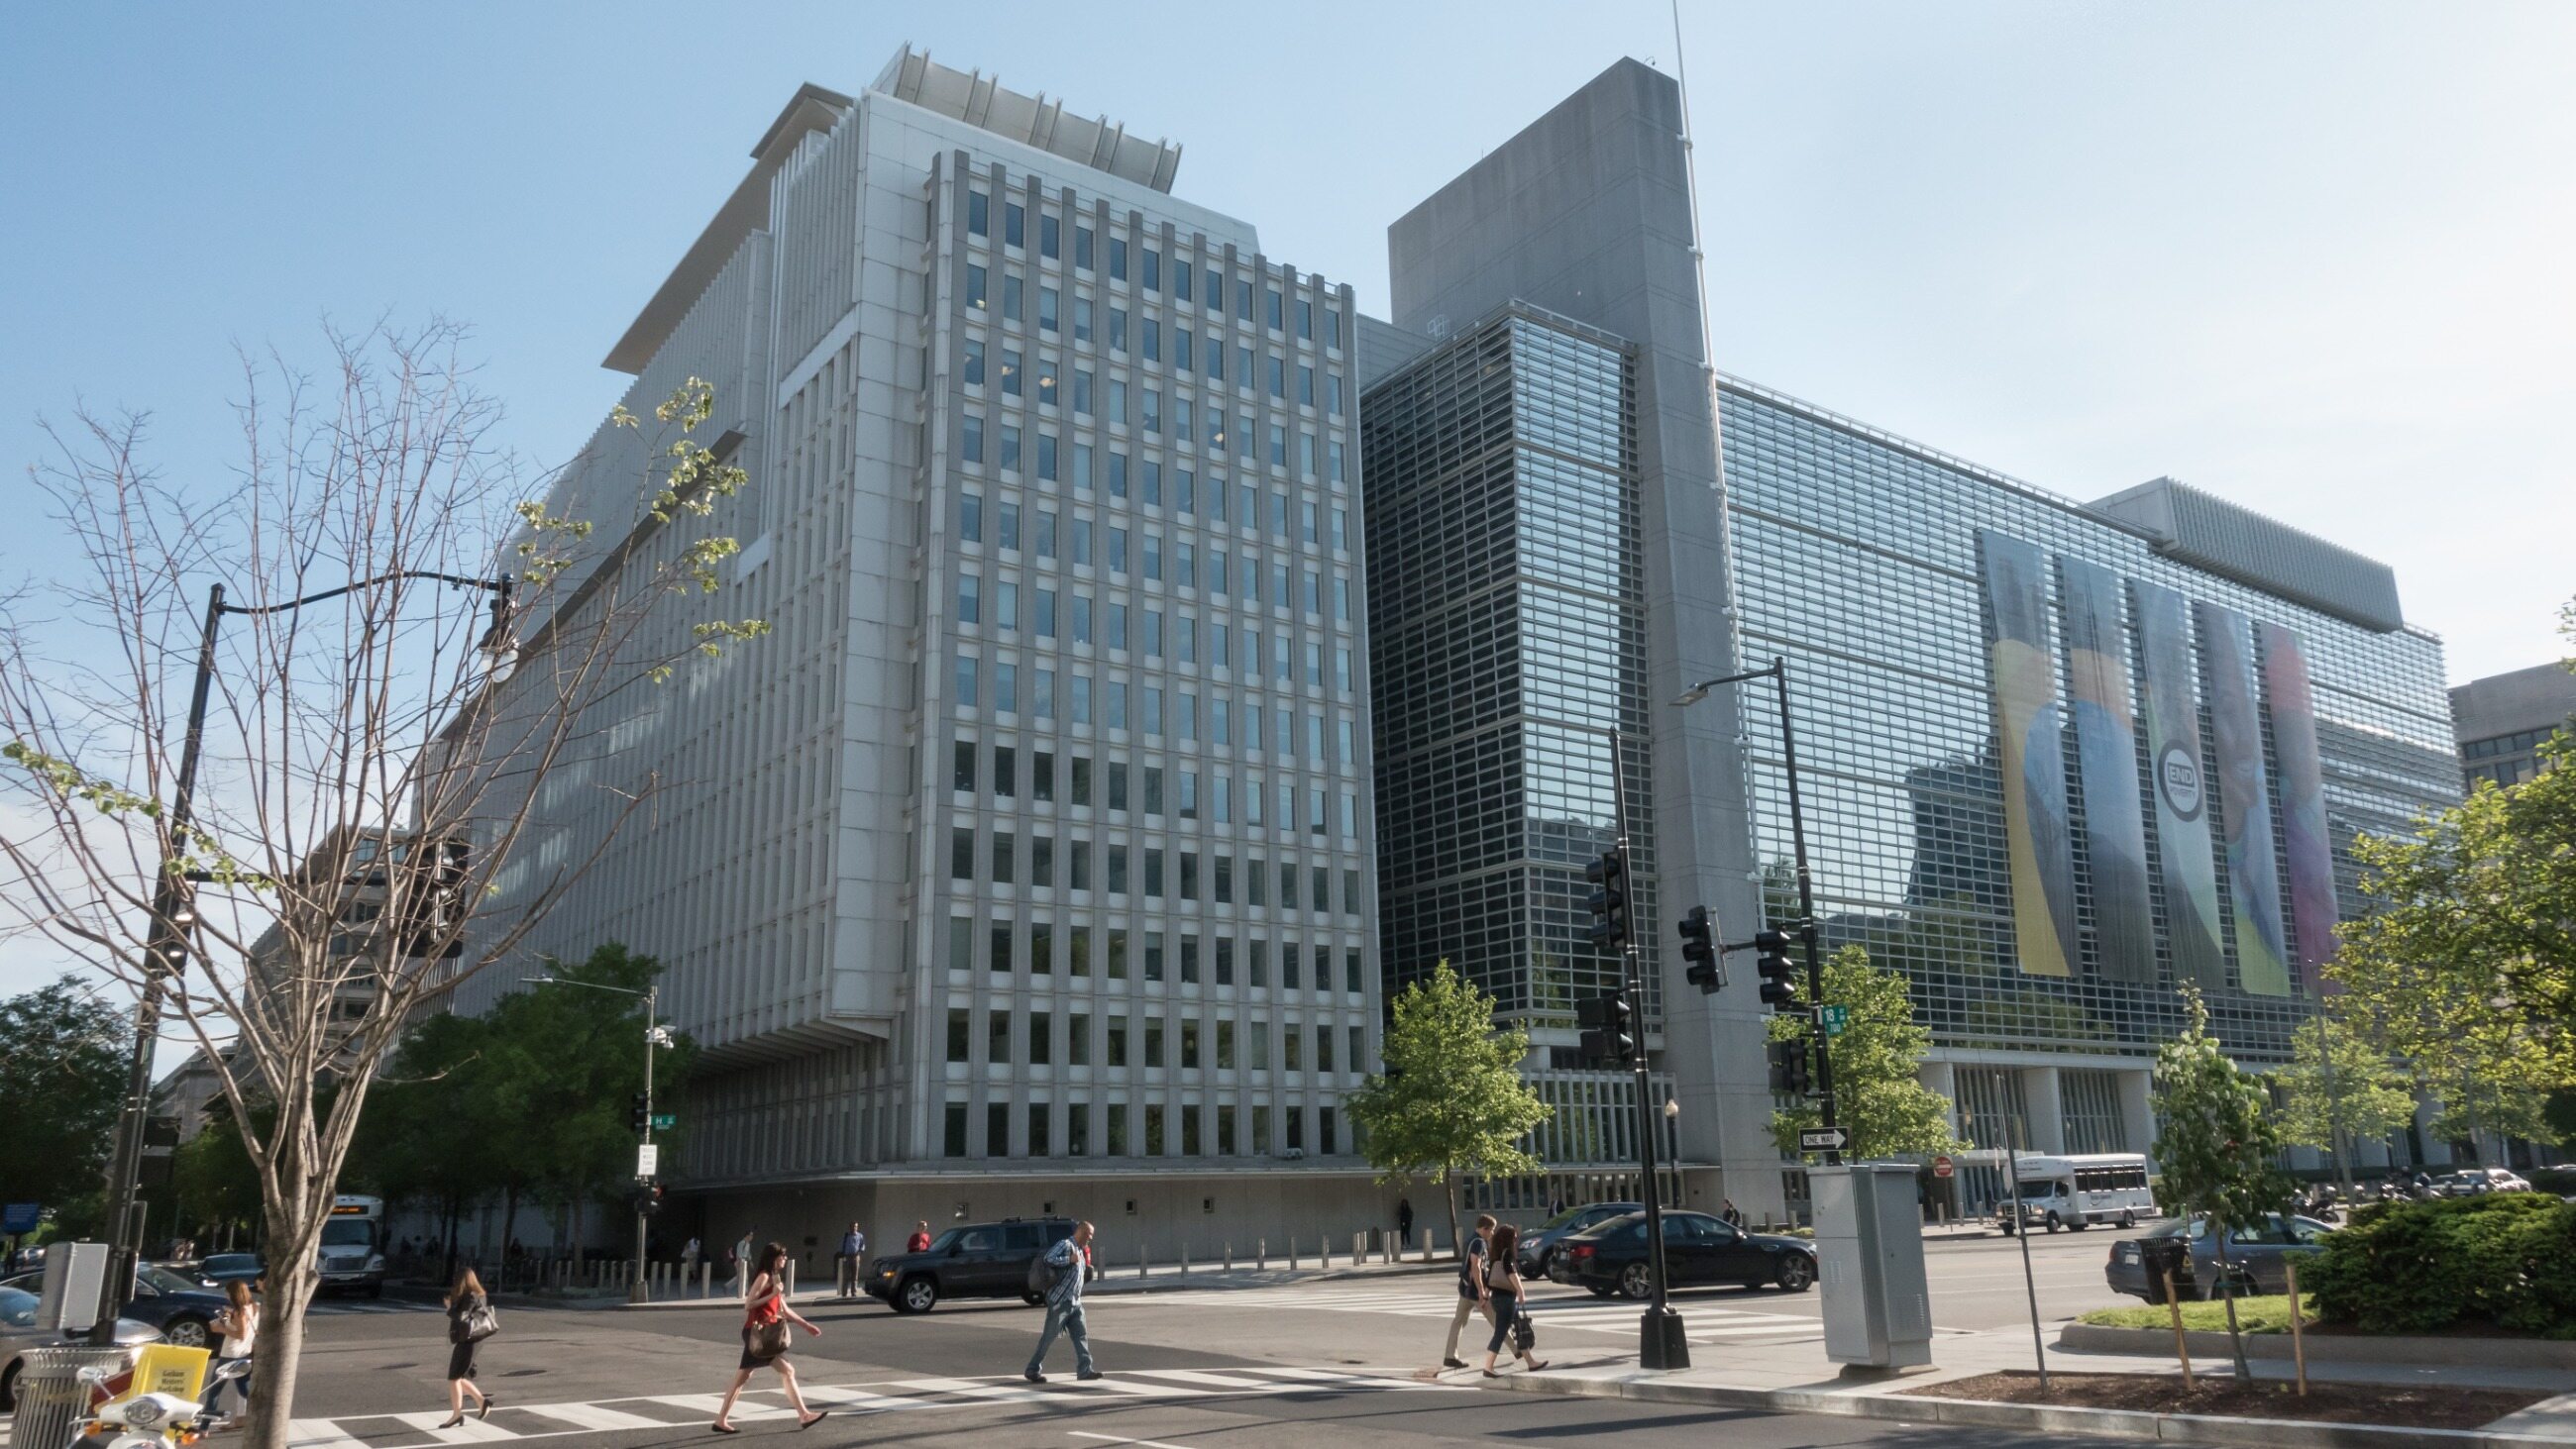 1 всемирный банк. Всемирного банка (the World Bank). Всемирный банк Вашингтон. Группа Всемирного банка штаб квартира. Штаб-квартира Всемирного банка в Вашингтоне.